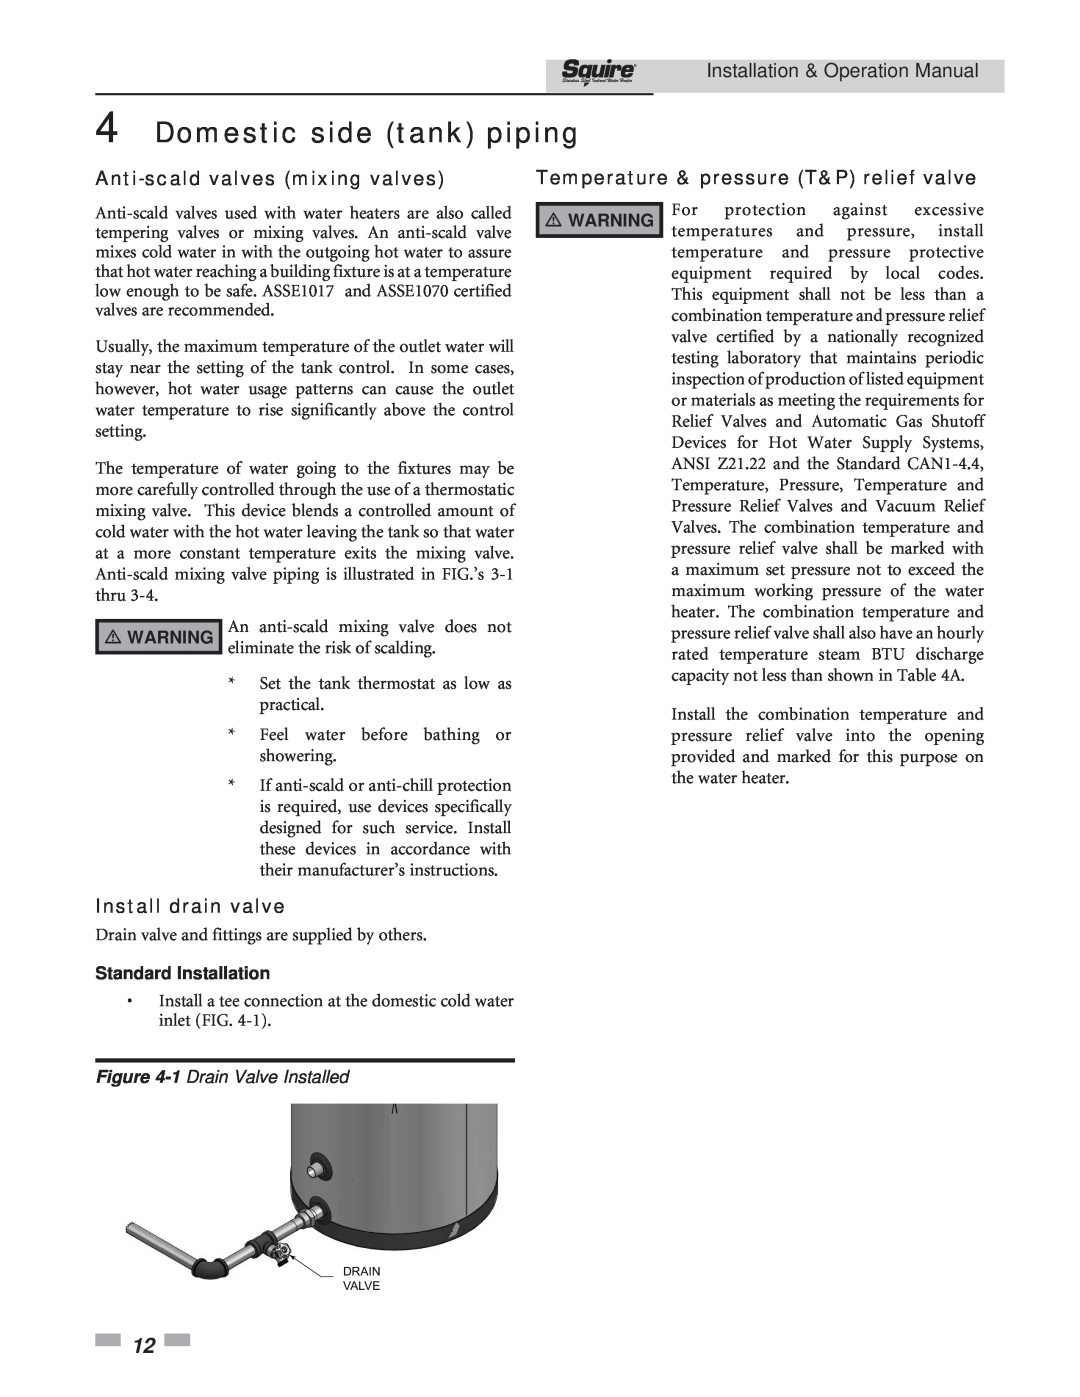 Lochinvar SIT119, SIT030 Anti-scaldvalves mixing valves, Temperature & pressure T&P relief valve, Install drain valve 